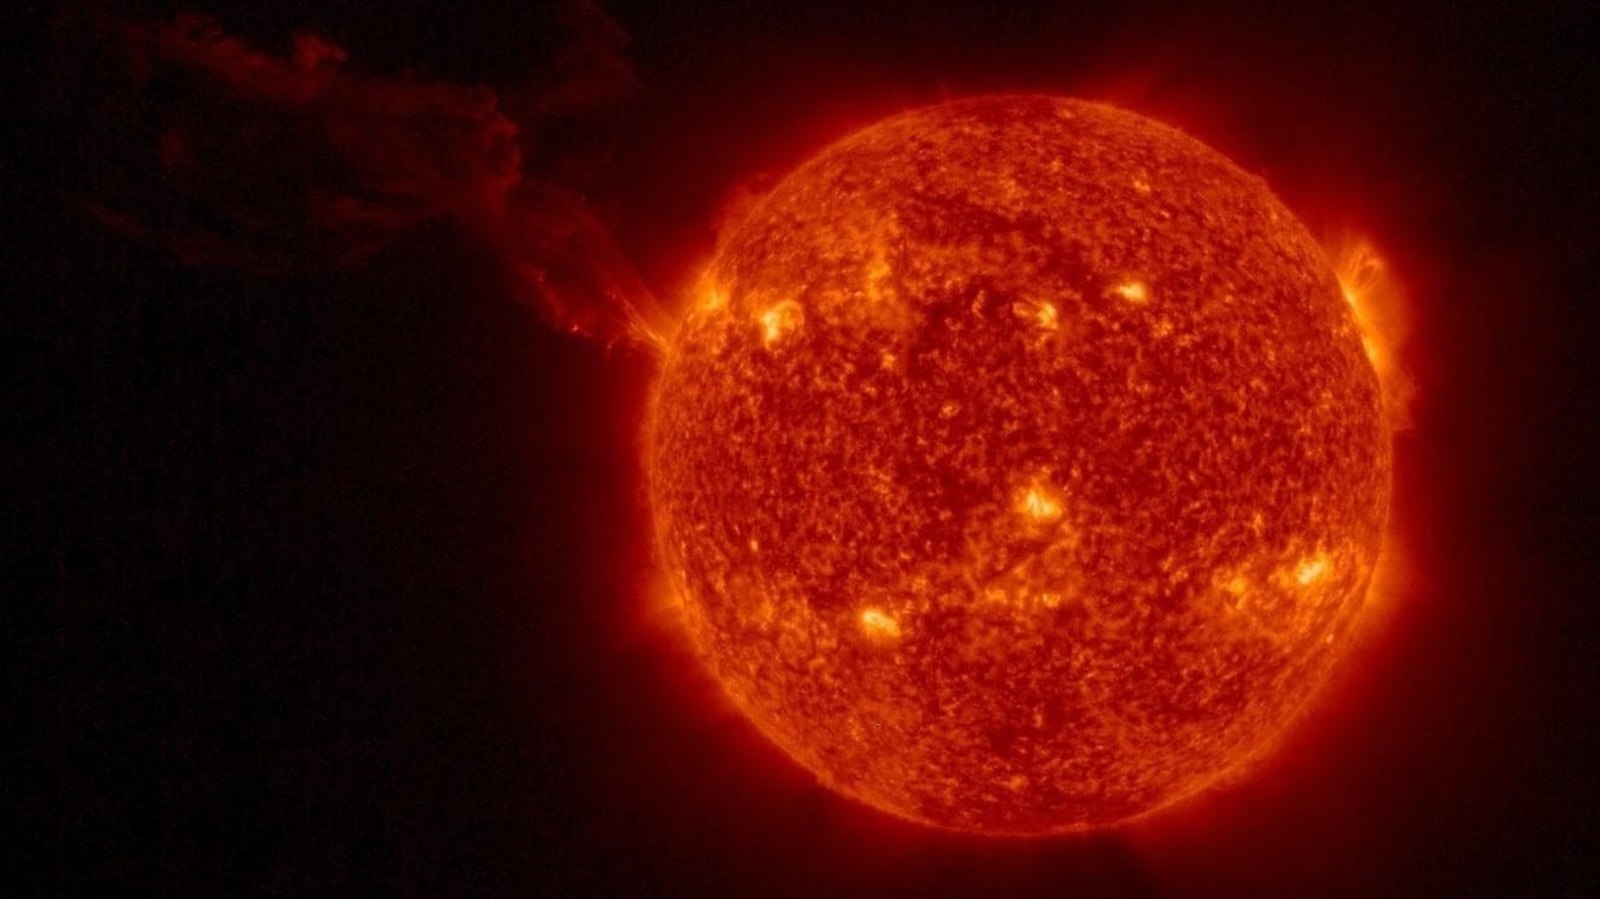 Wielka burza słoneczna uderza w Ziemię 20 lipca po nieoczekiwanej eksplozji słonecznej na Słońcu